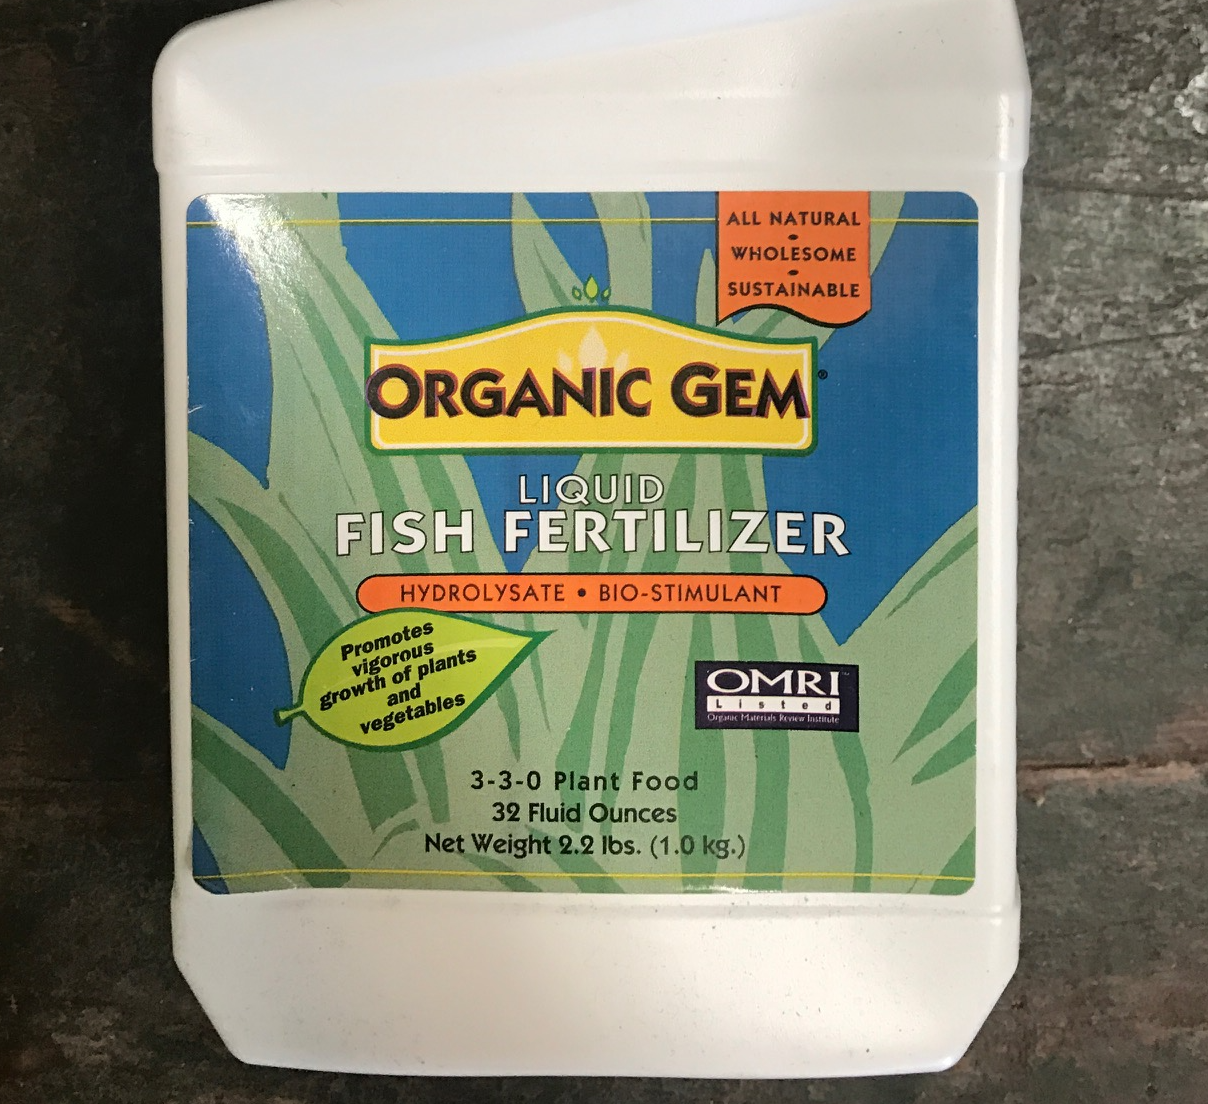 Organic Gem Fish Fertilizer